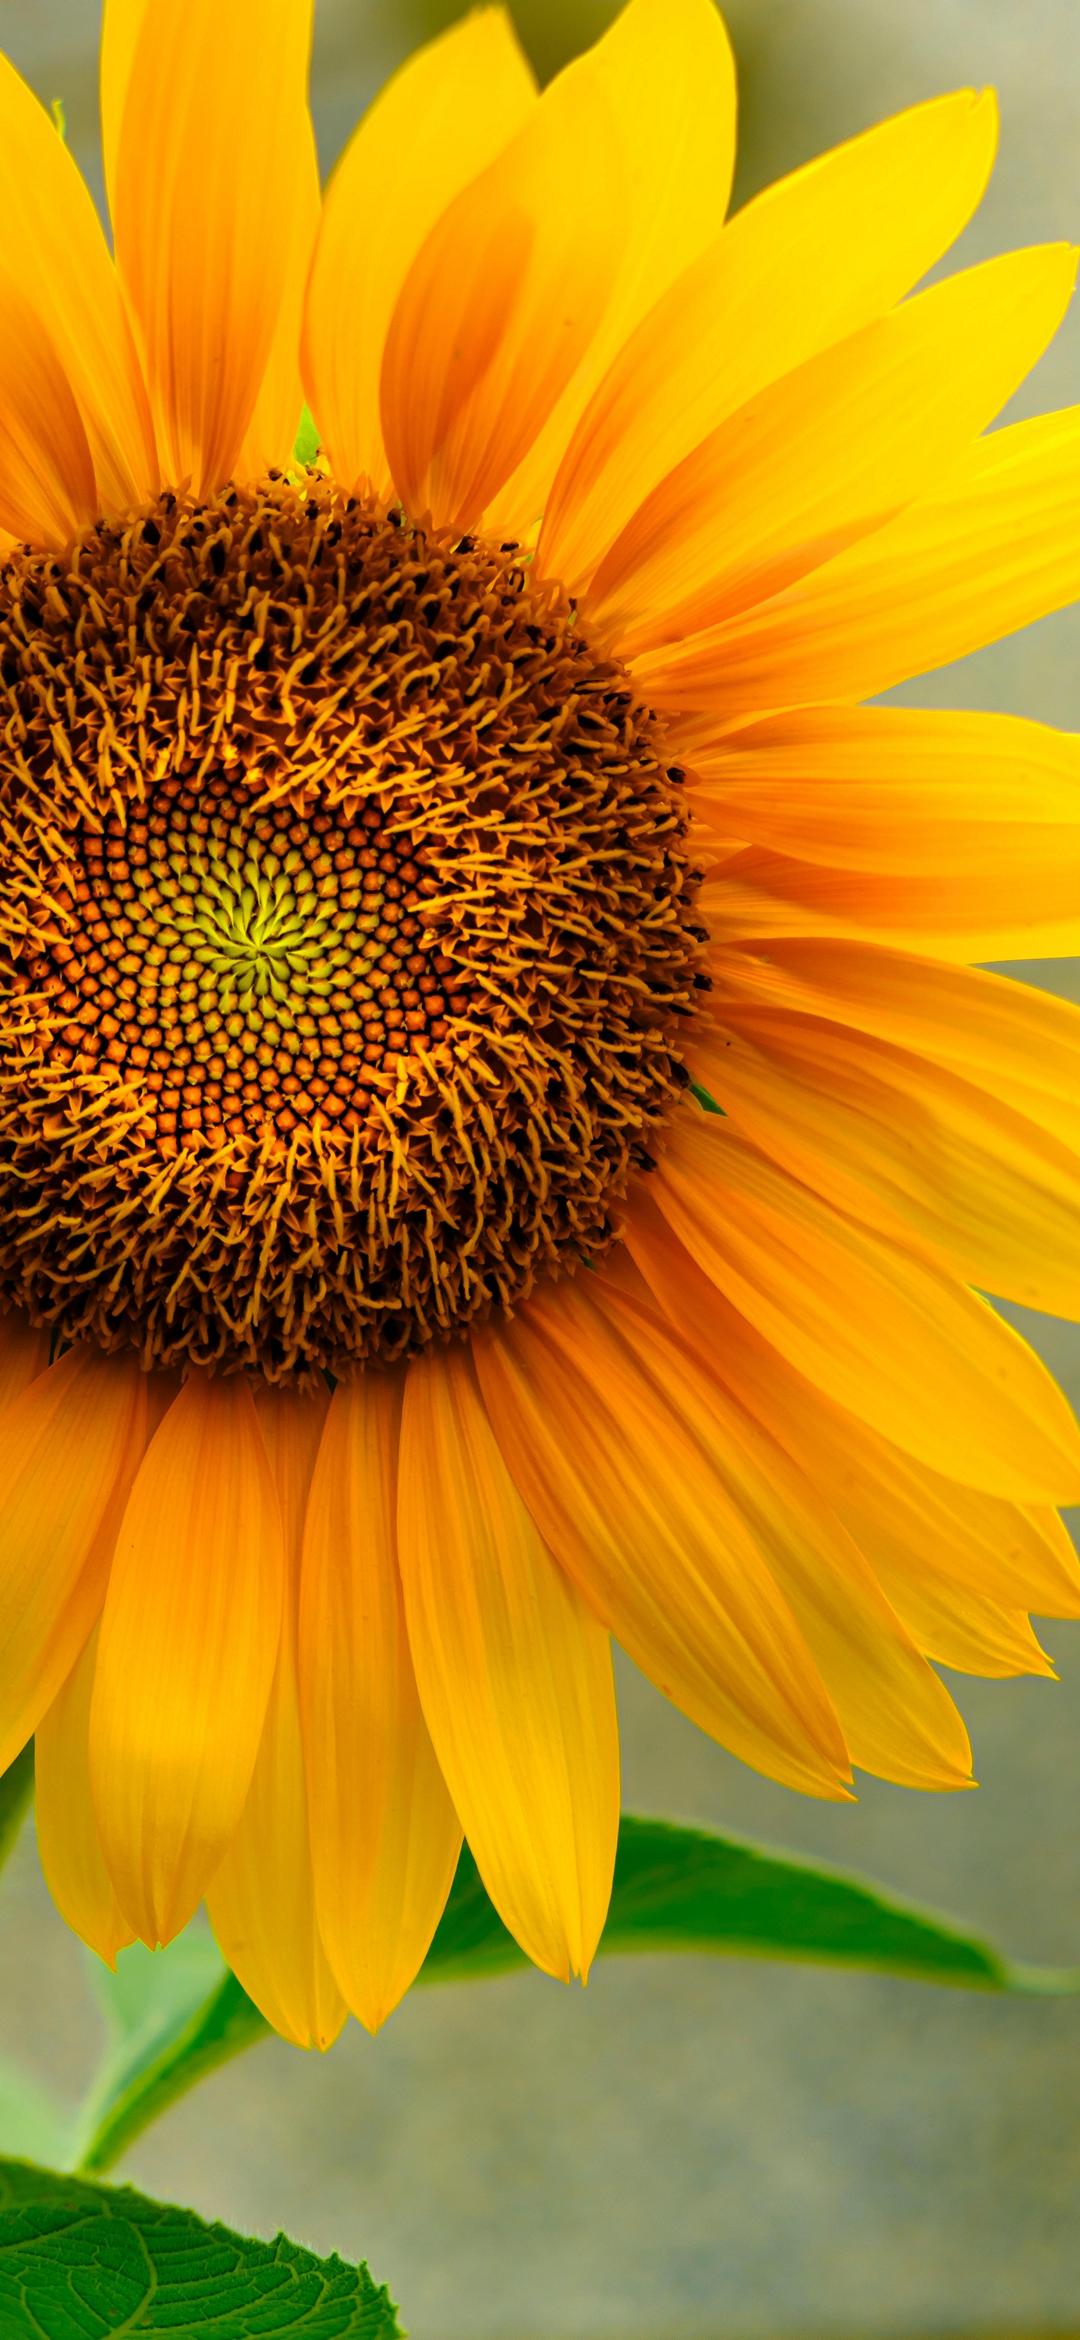 Sunflower Field Sunset Wallpaper Hd 8589131 : Wallpapers13.com